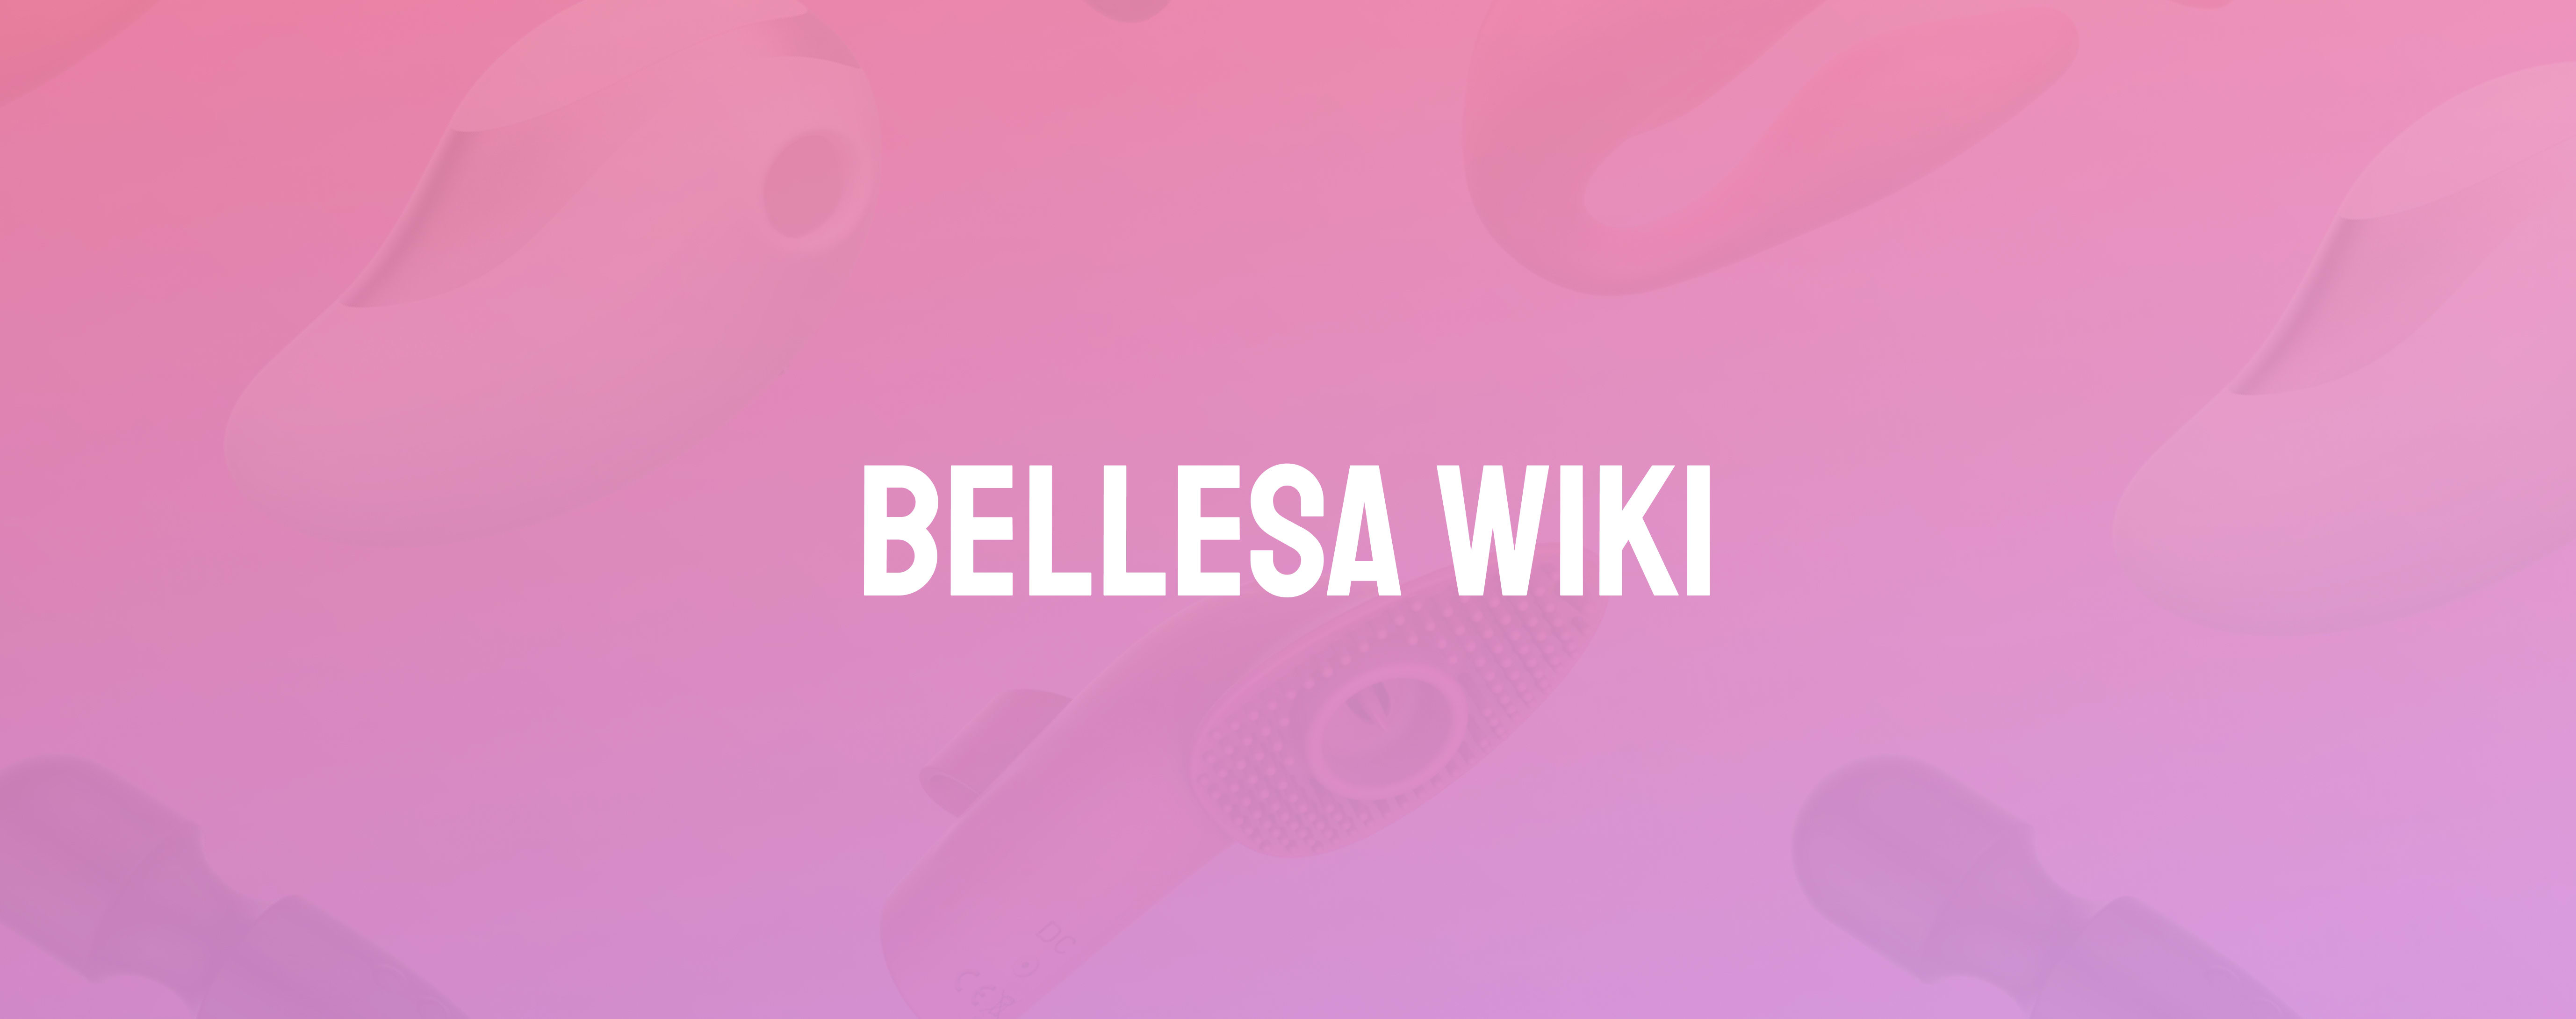 Erotica - Bellesa Wiki Bellesa